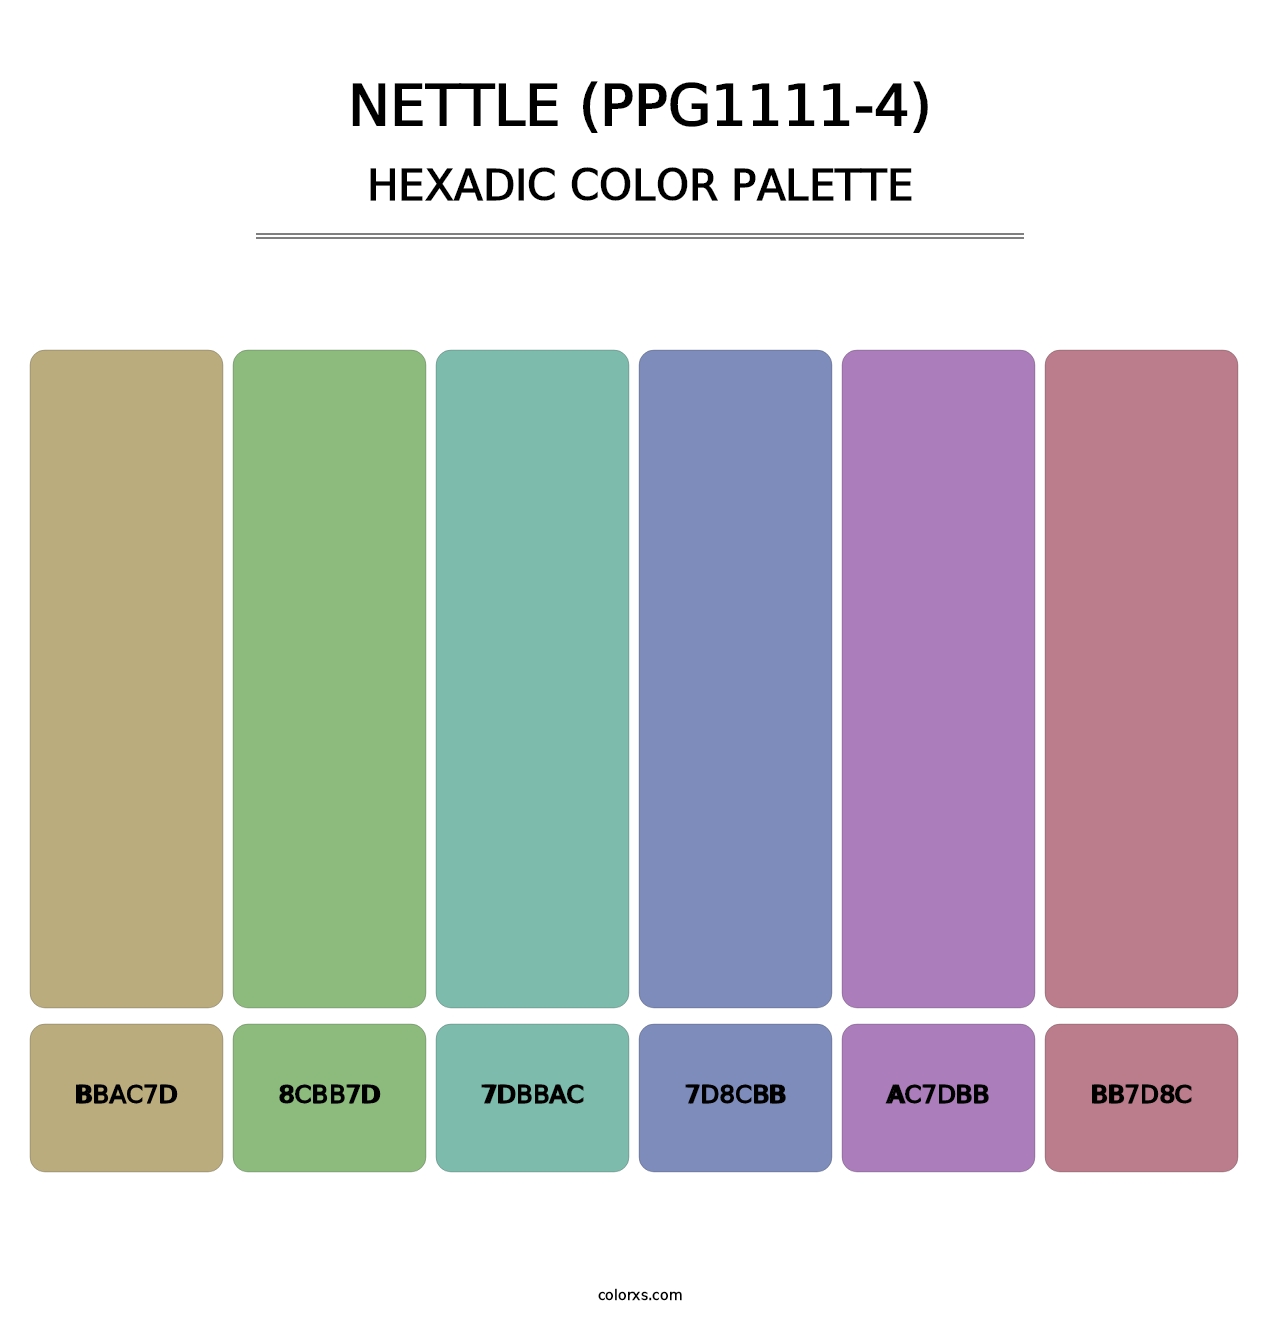 Nettle (PPG1111-4) - Hexadic Color Palette